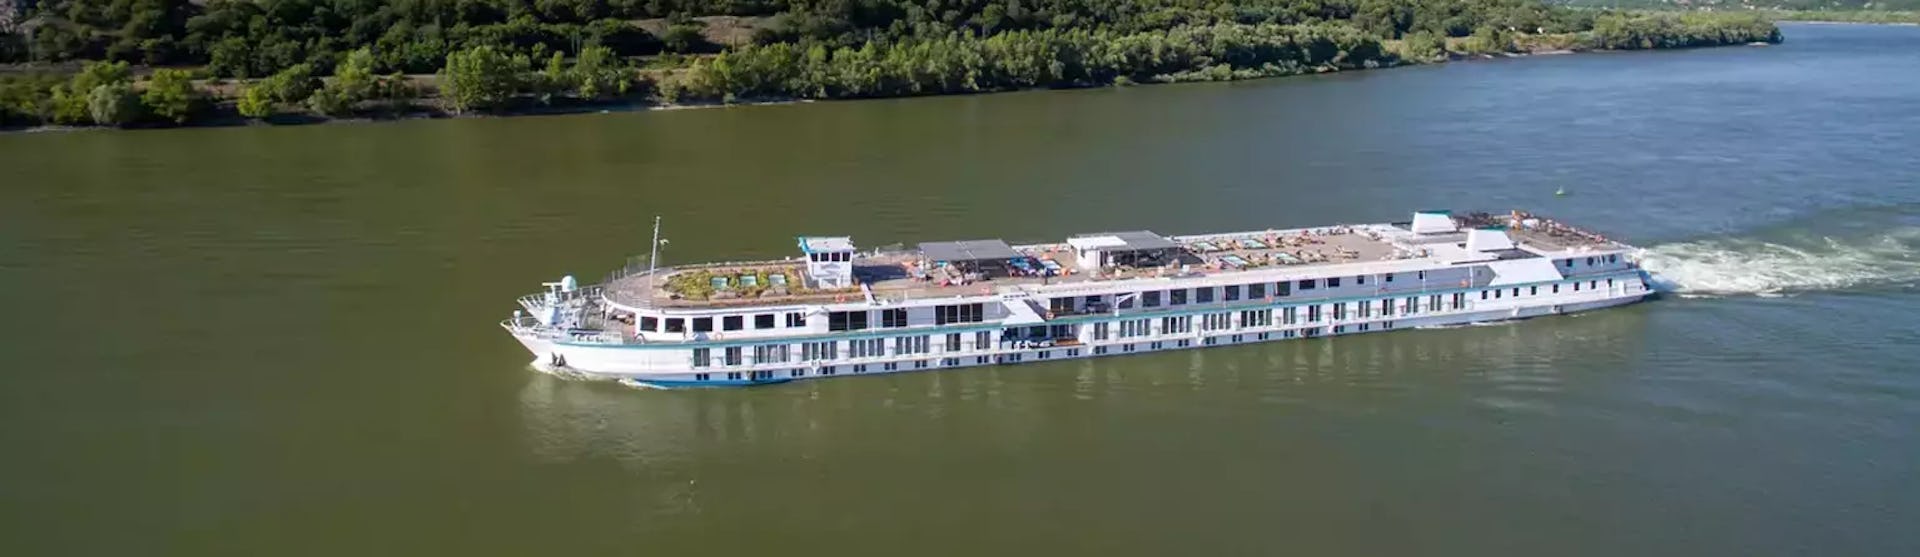 Flusskreuzfahrtschiff Riverside Mozart während der Fahrt